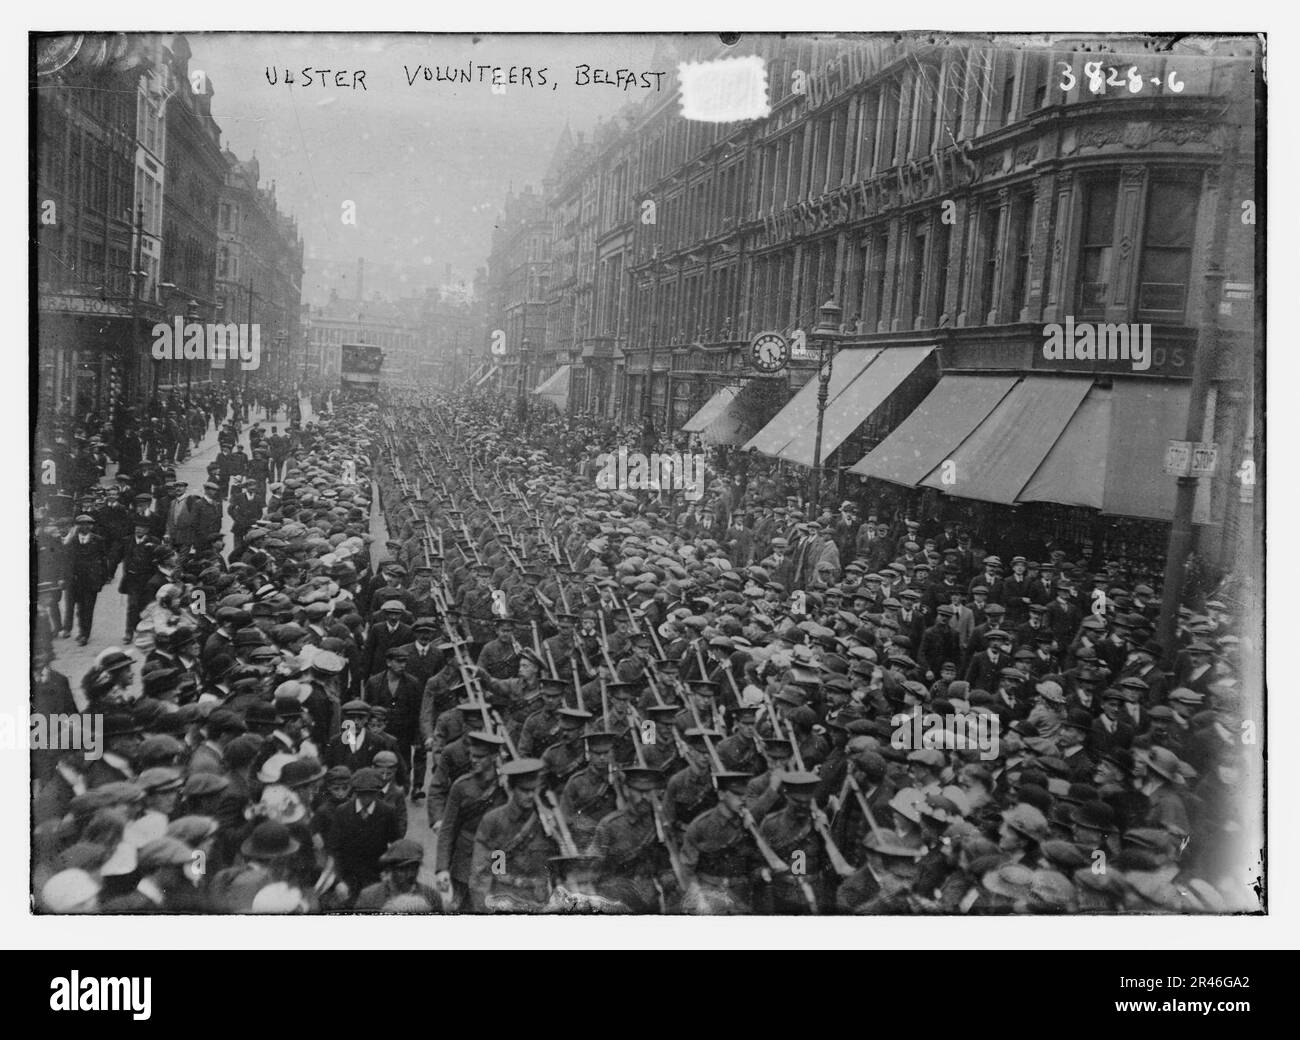 Ulster Volunteers, Belfast Stock Photo